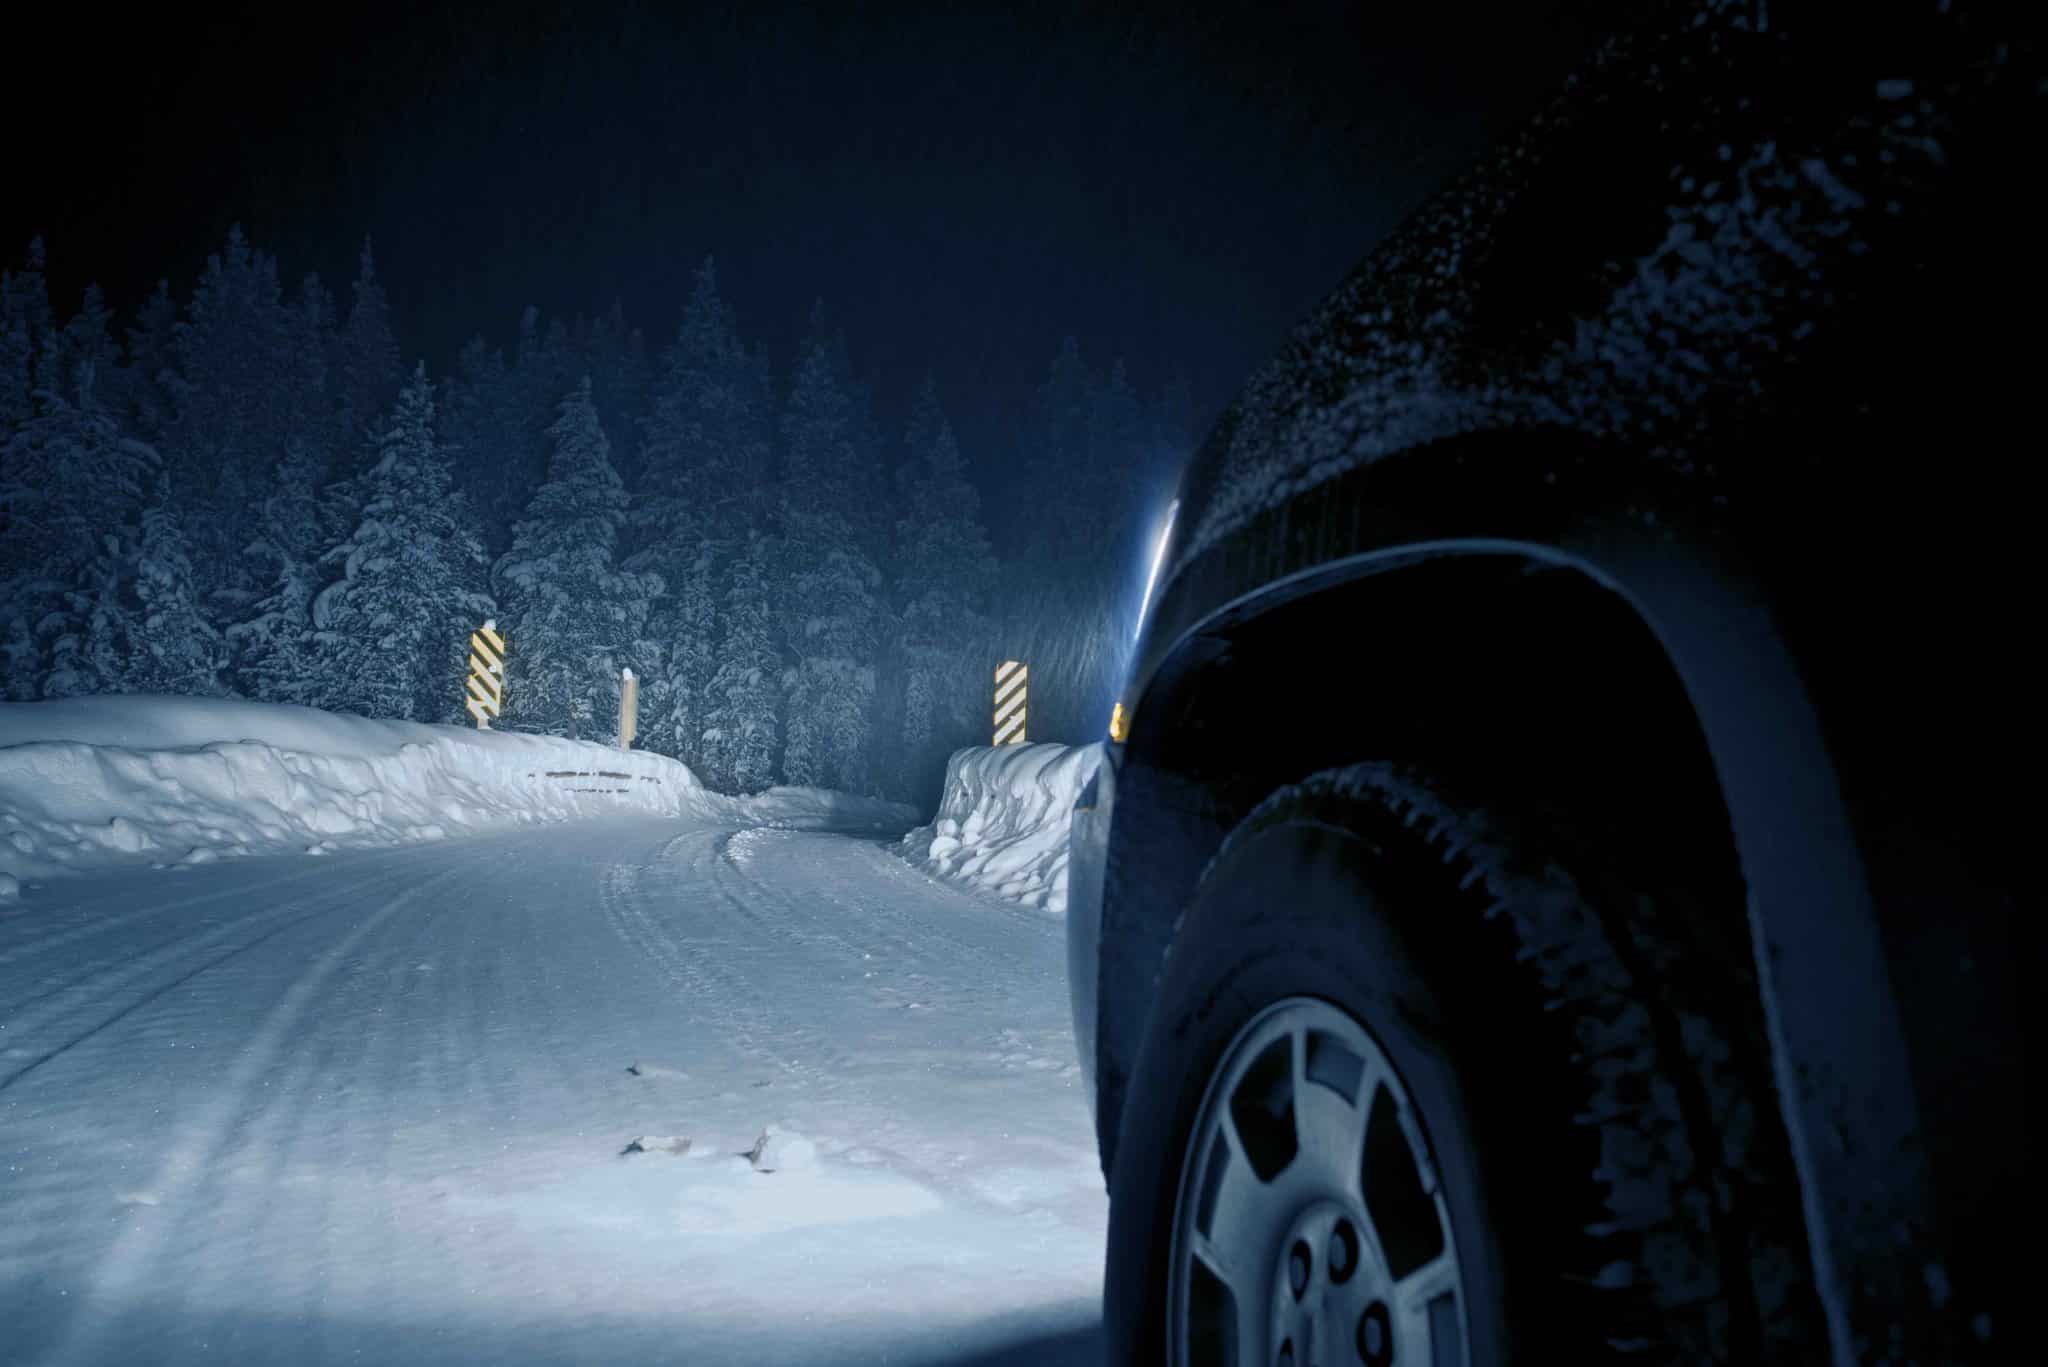 Bil på snø i mørket